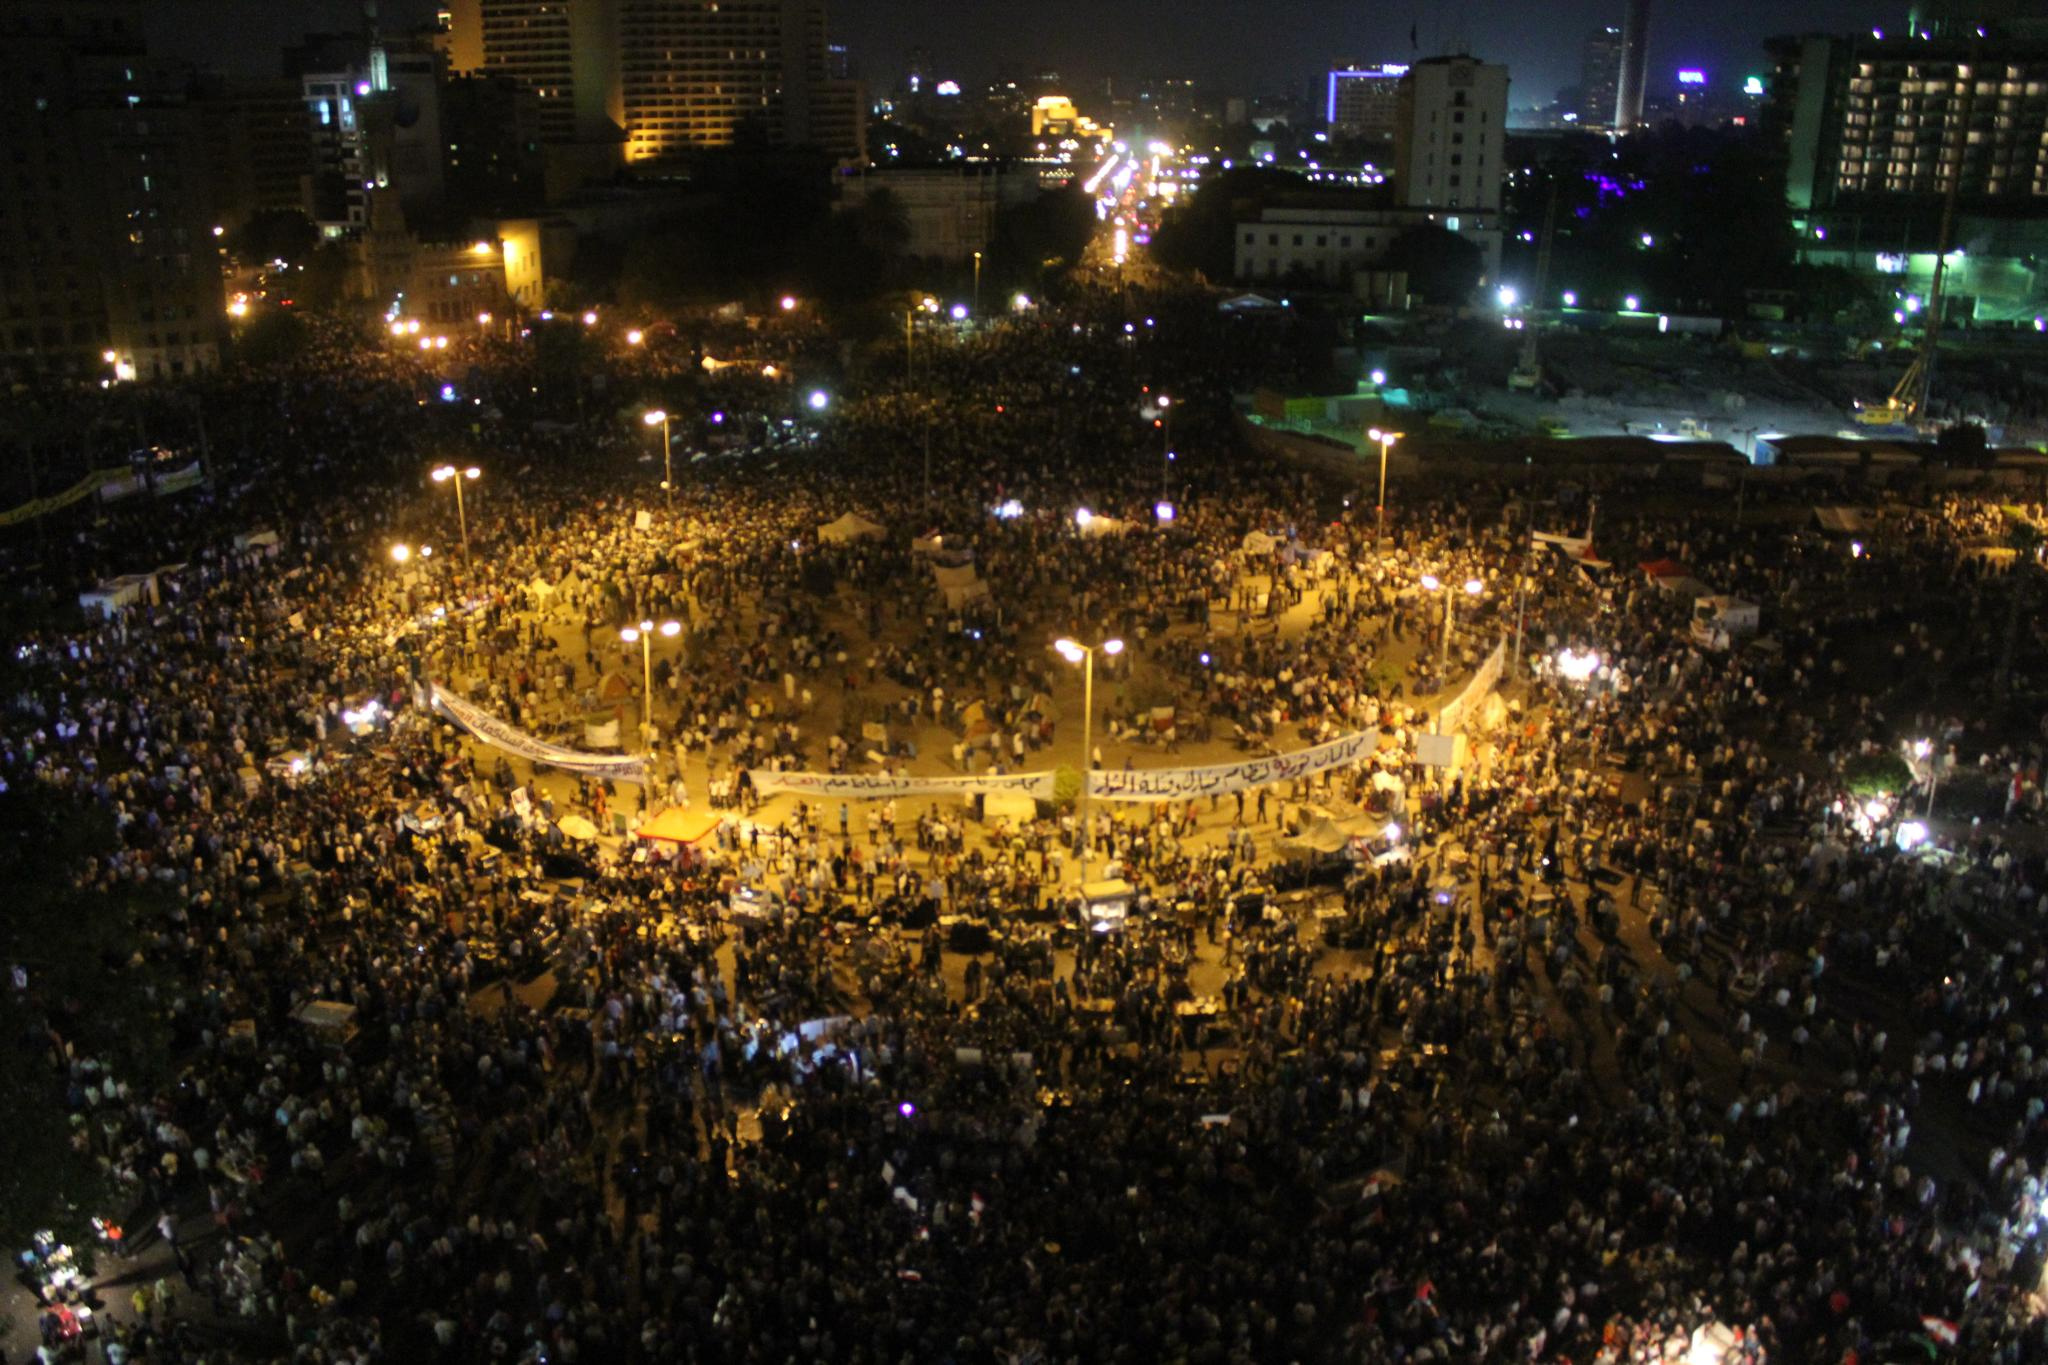 שינוי אמיתי או תיקונים קוסמטיים? מפגינים בכיכר תחריר בקהיר, 2012 (צילום: Gigi Ibrahim, flickr)